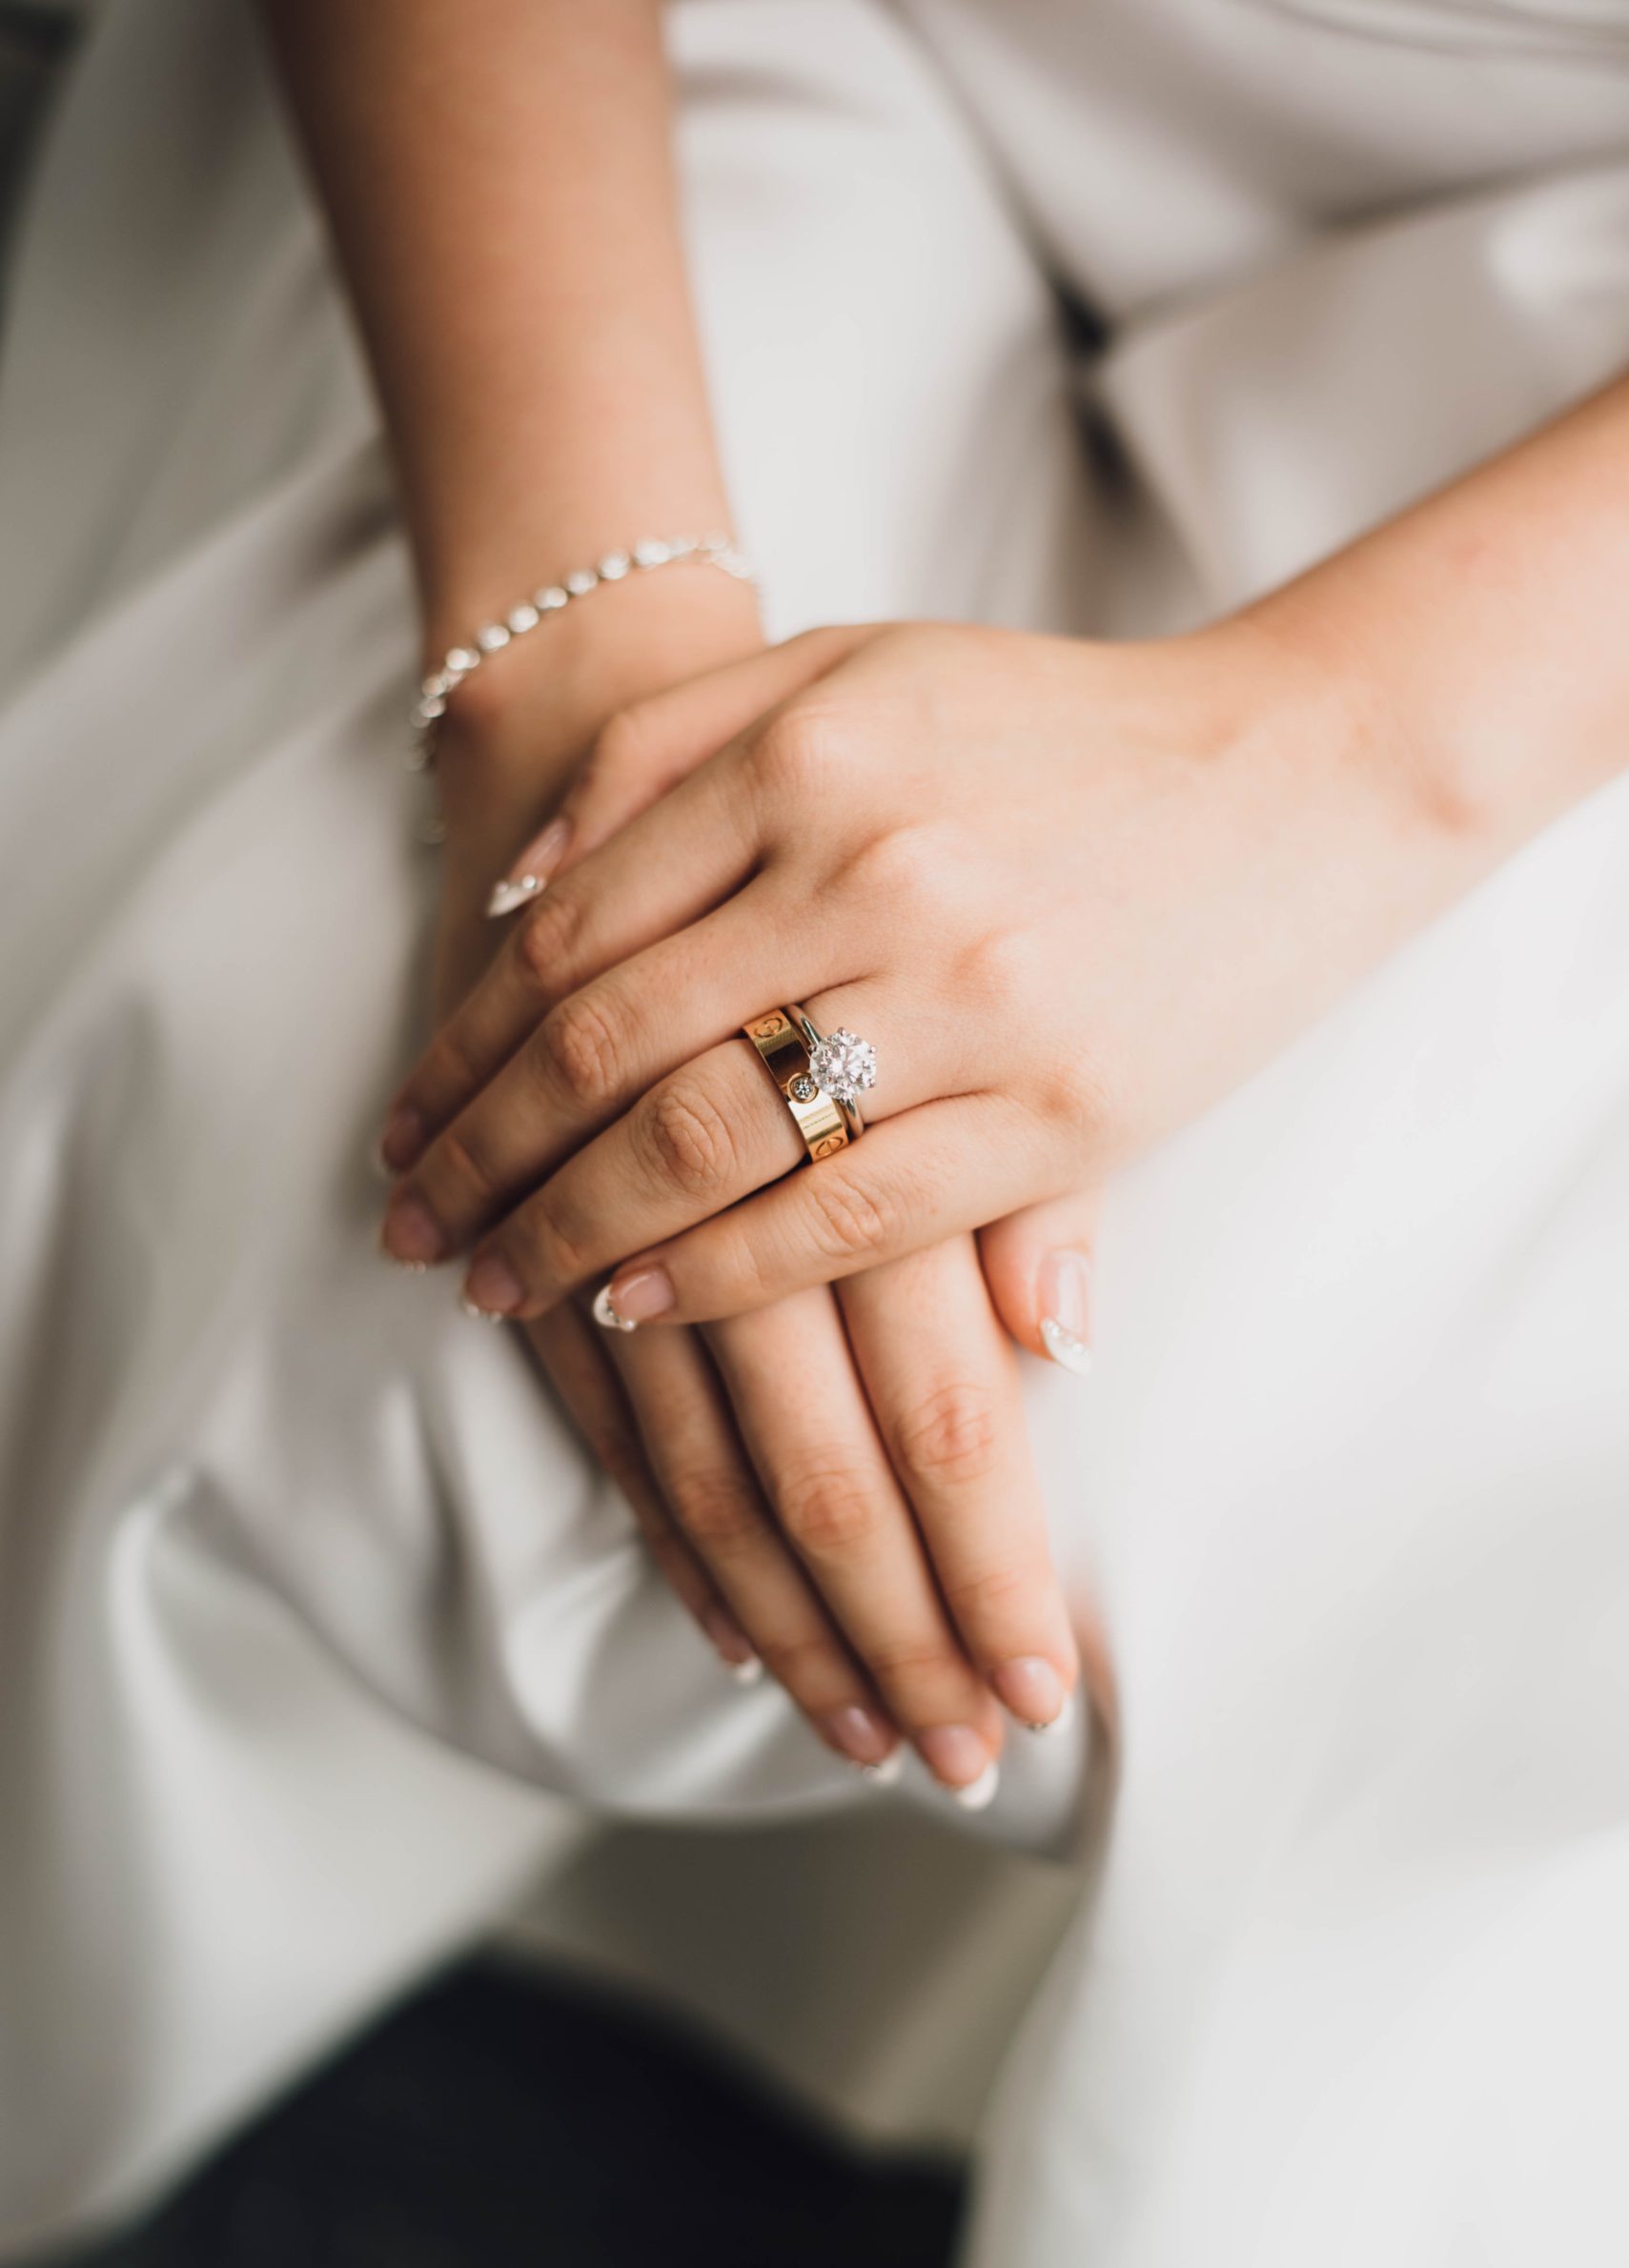 Brudeparets hender, tett sammen med bryllupsringer og elegant smykker.